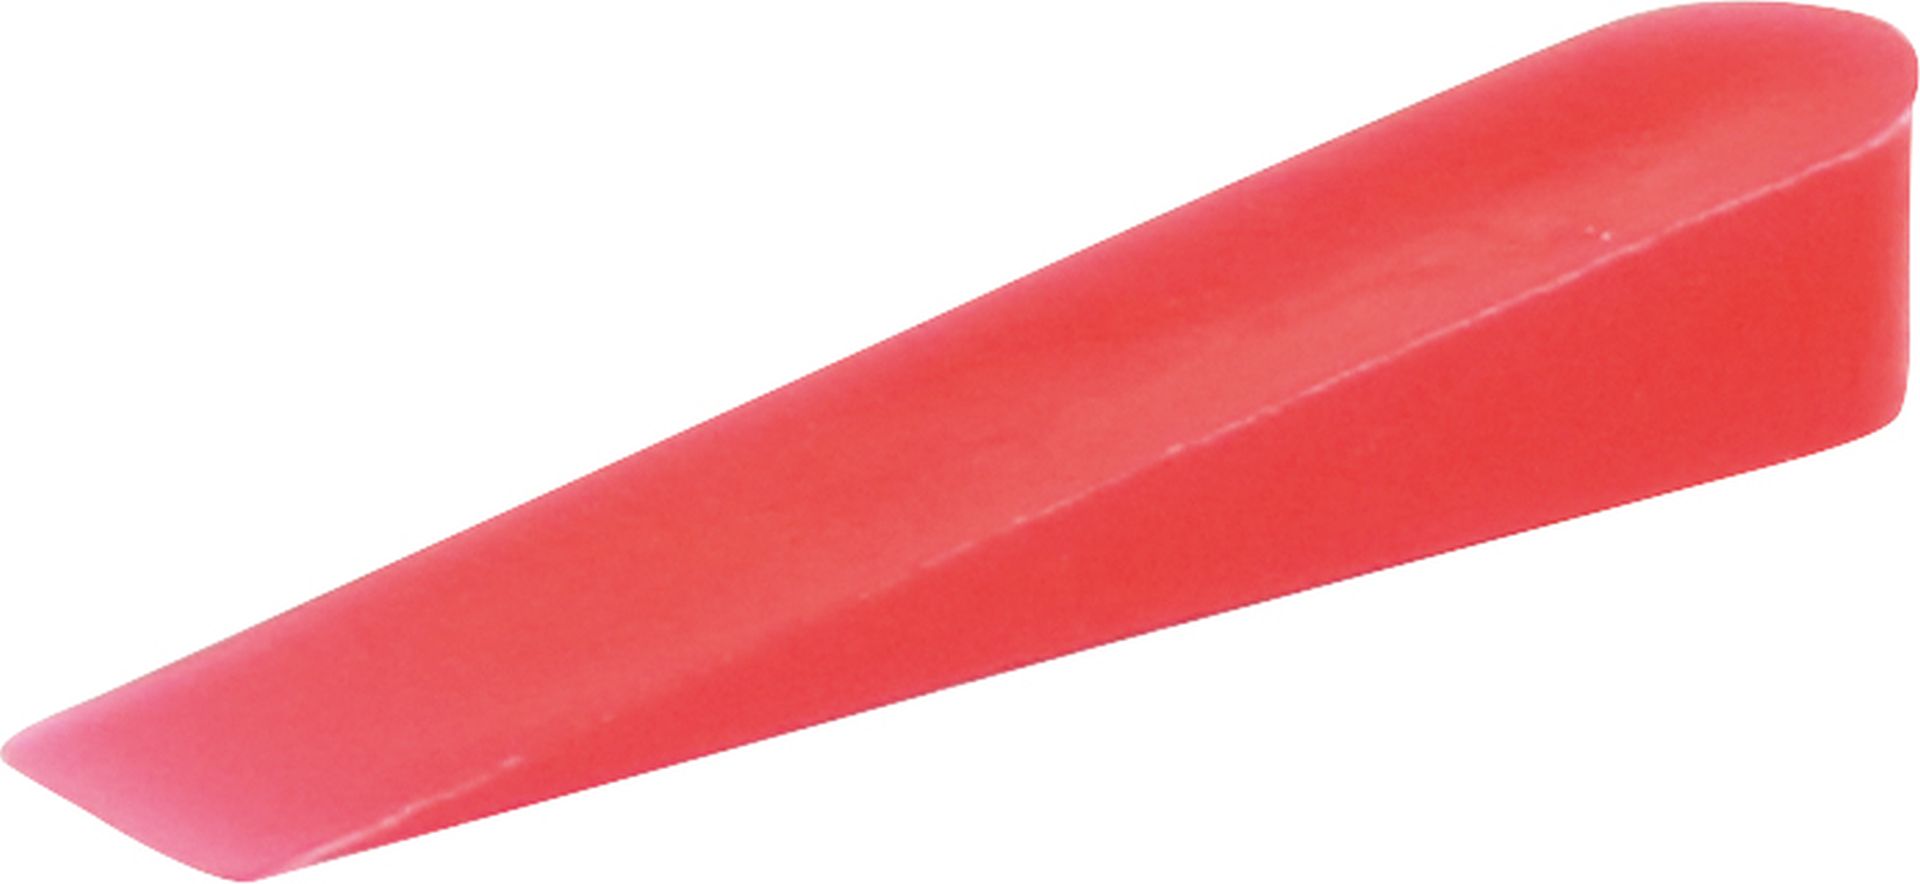 TRIUSO Fliesenkeile aus Kunststoff, rot, 250 Stück